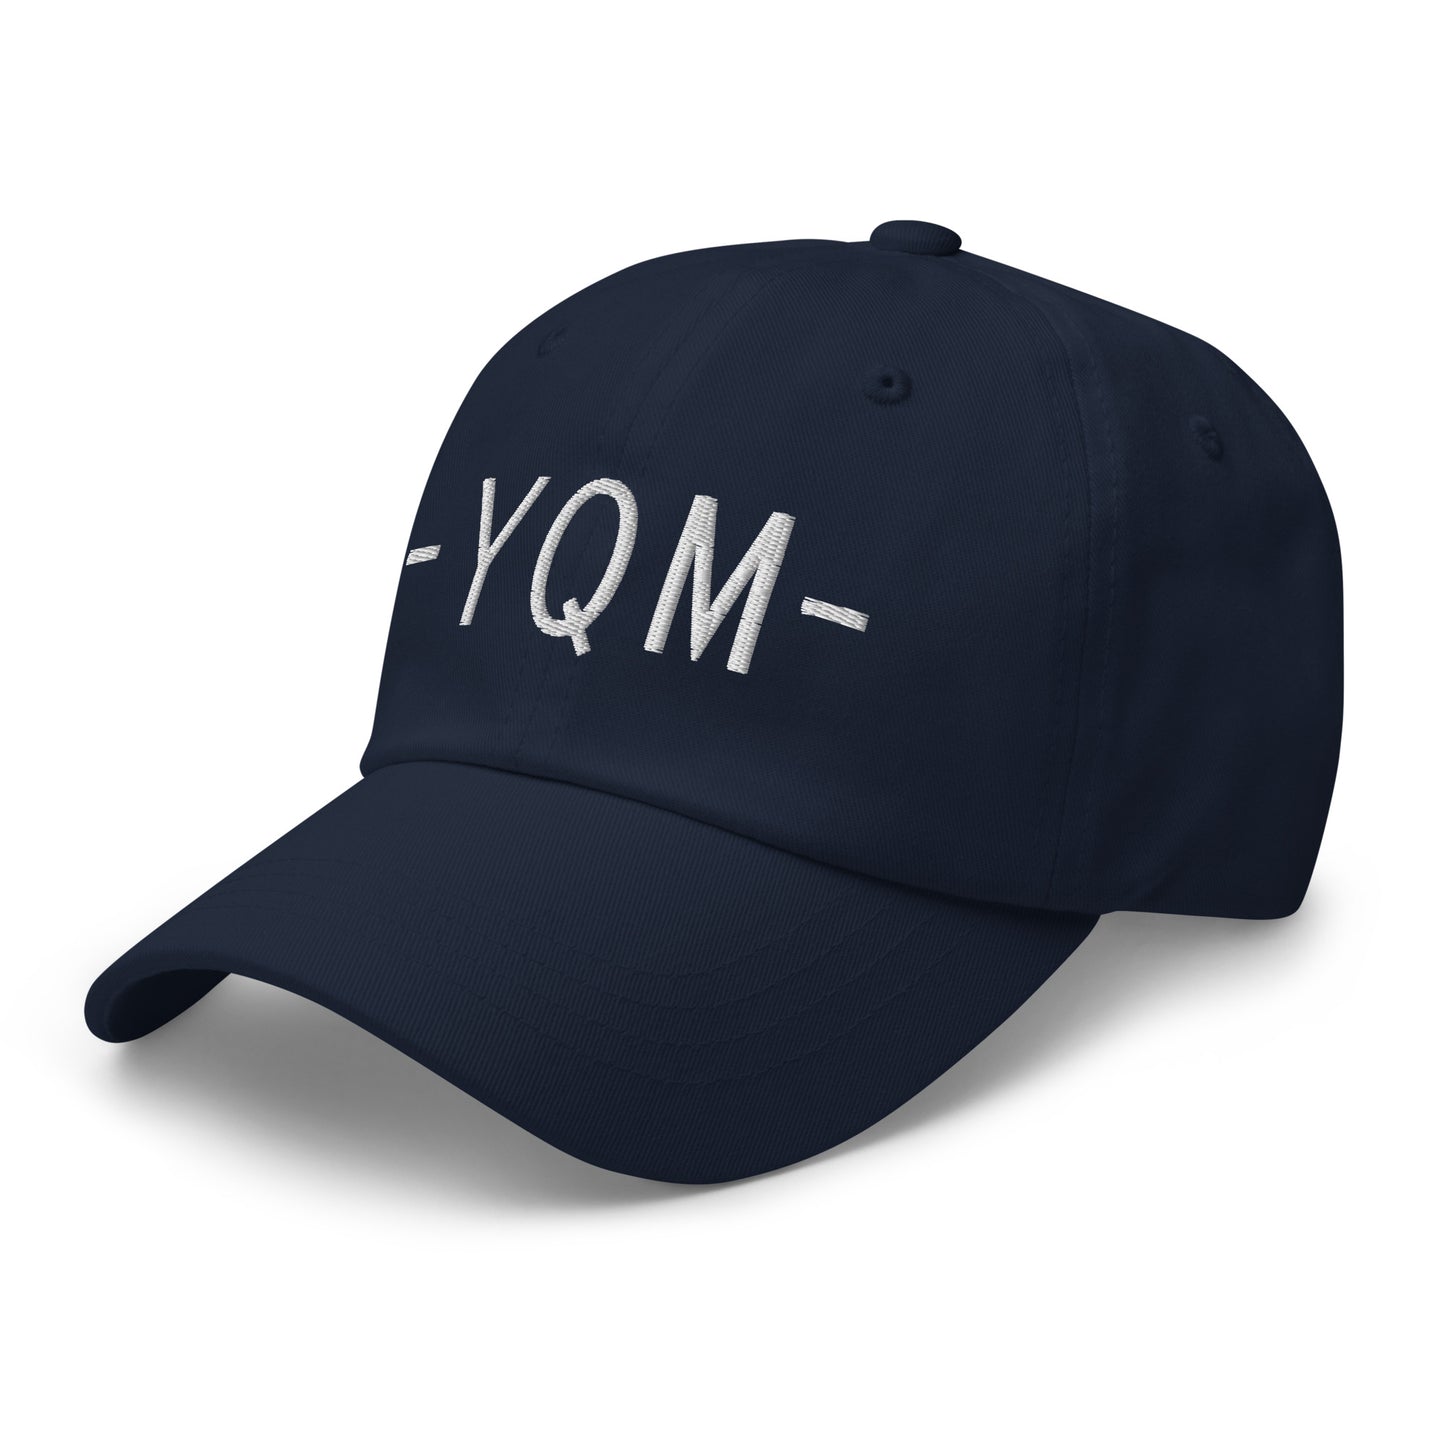 Souvenir Baseball Cap - White • YQM Moncton • YHM Designs - Image 15